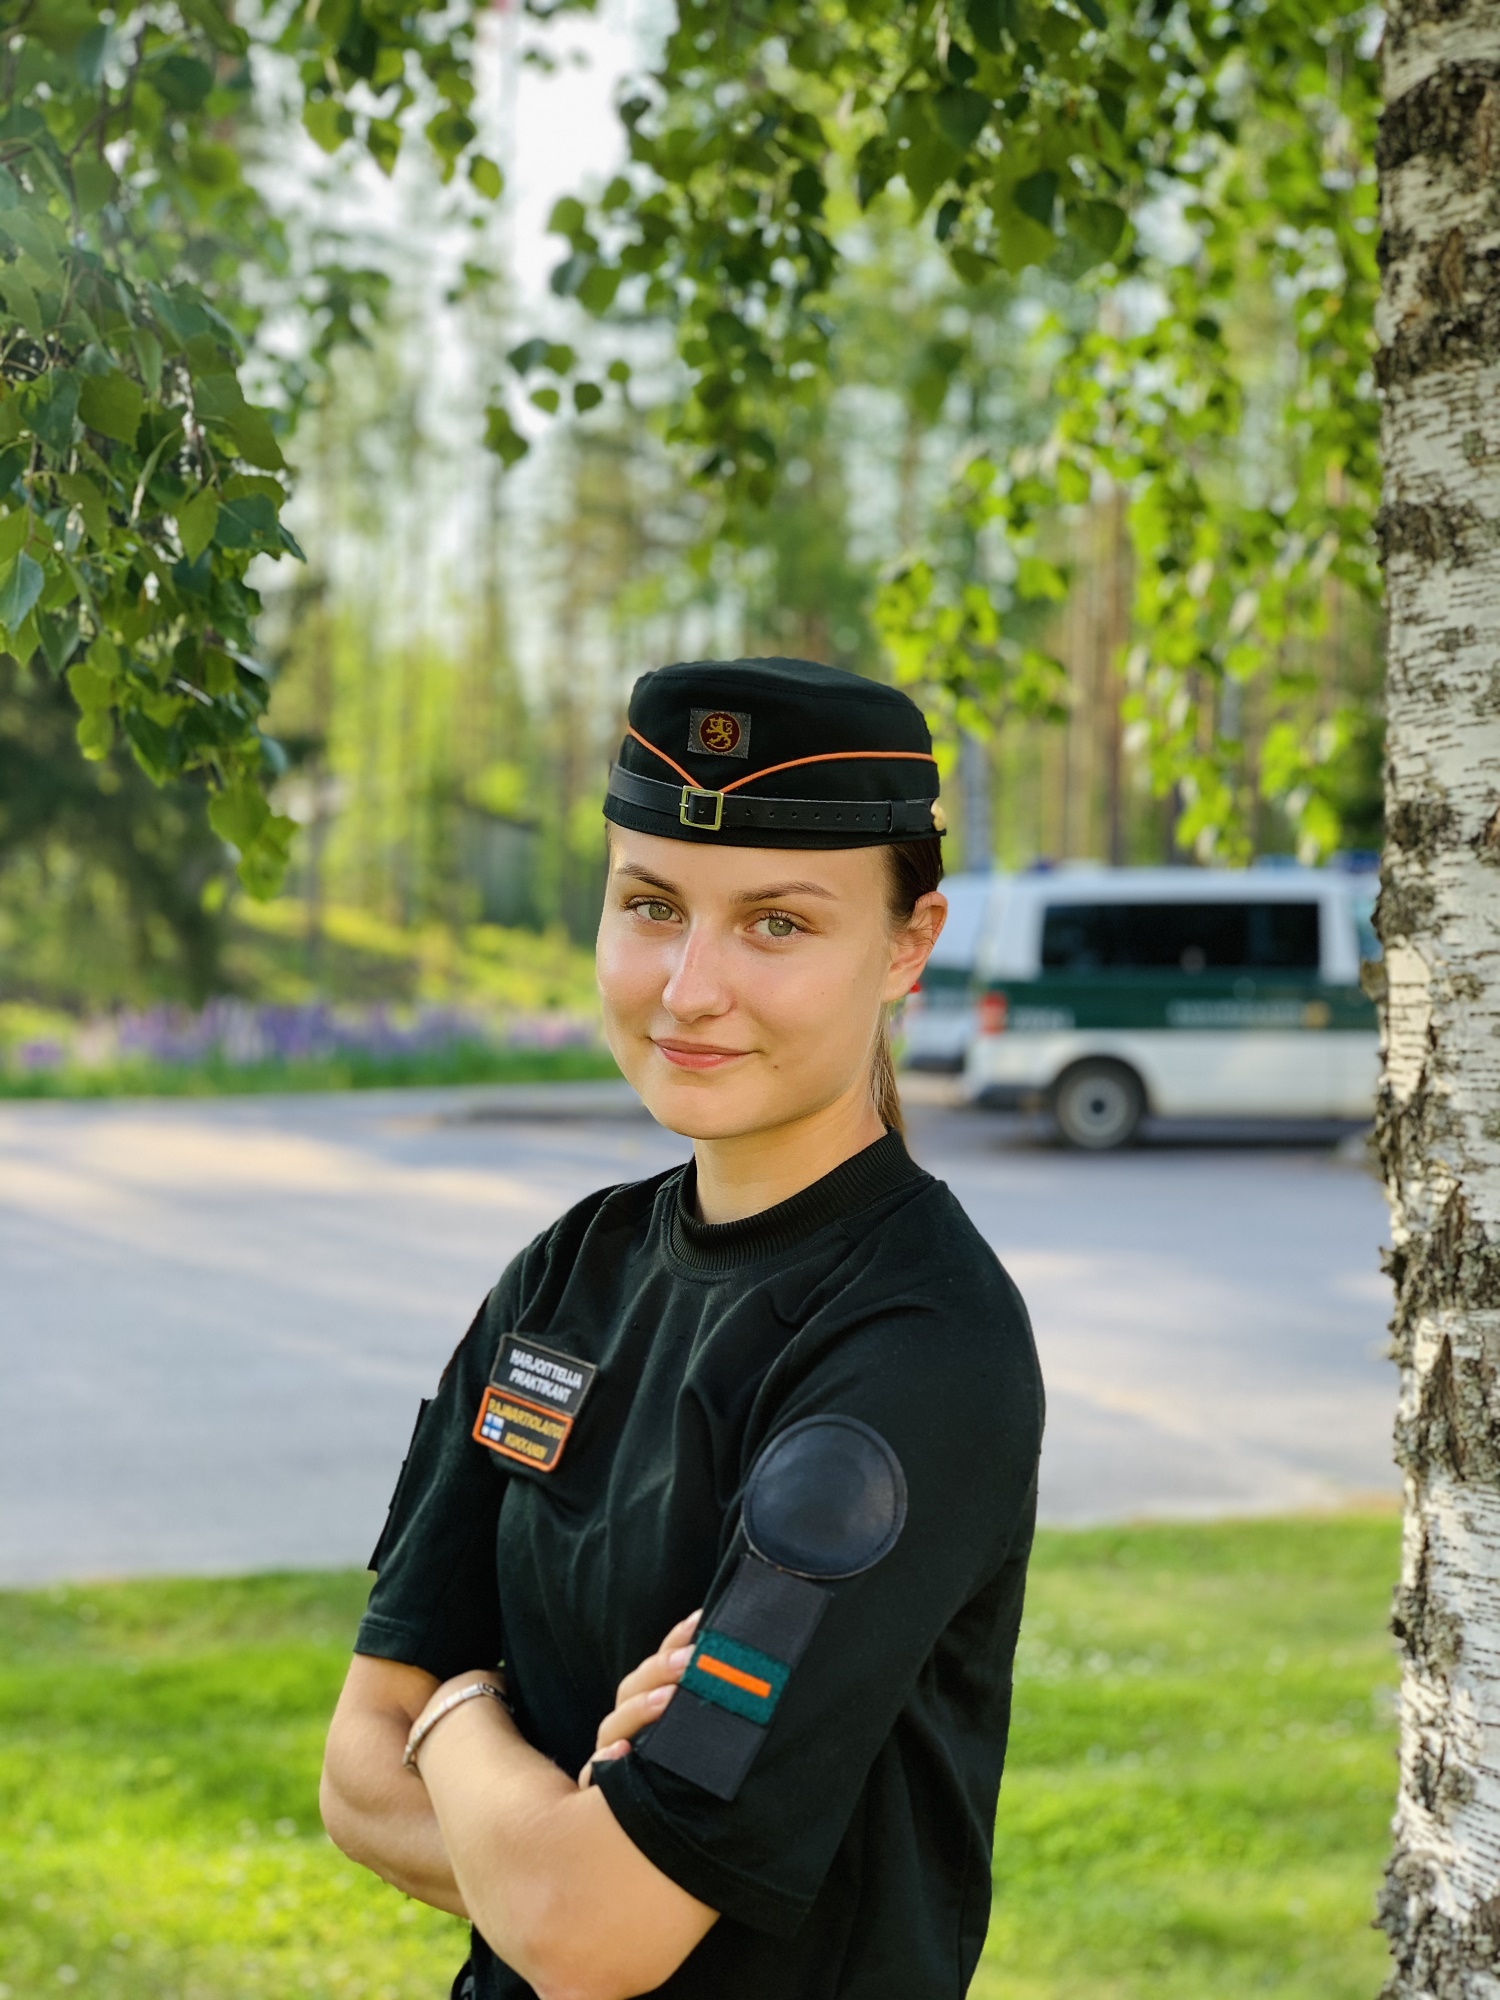 Gränsbevakningsstuderande Suvi Kukkanen i uniformen på sommaren, till vänster en björk, en tjänstebil på bakgrund.